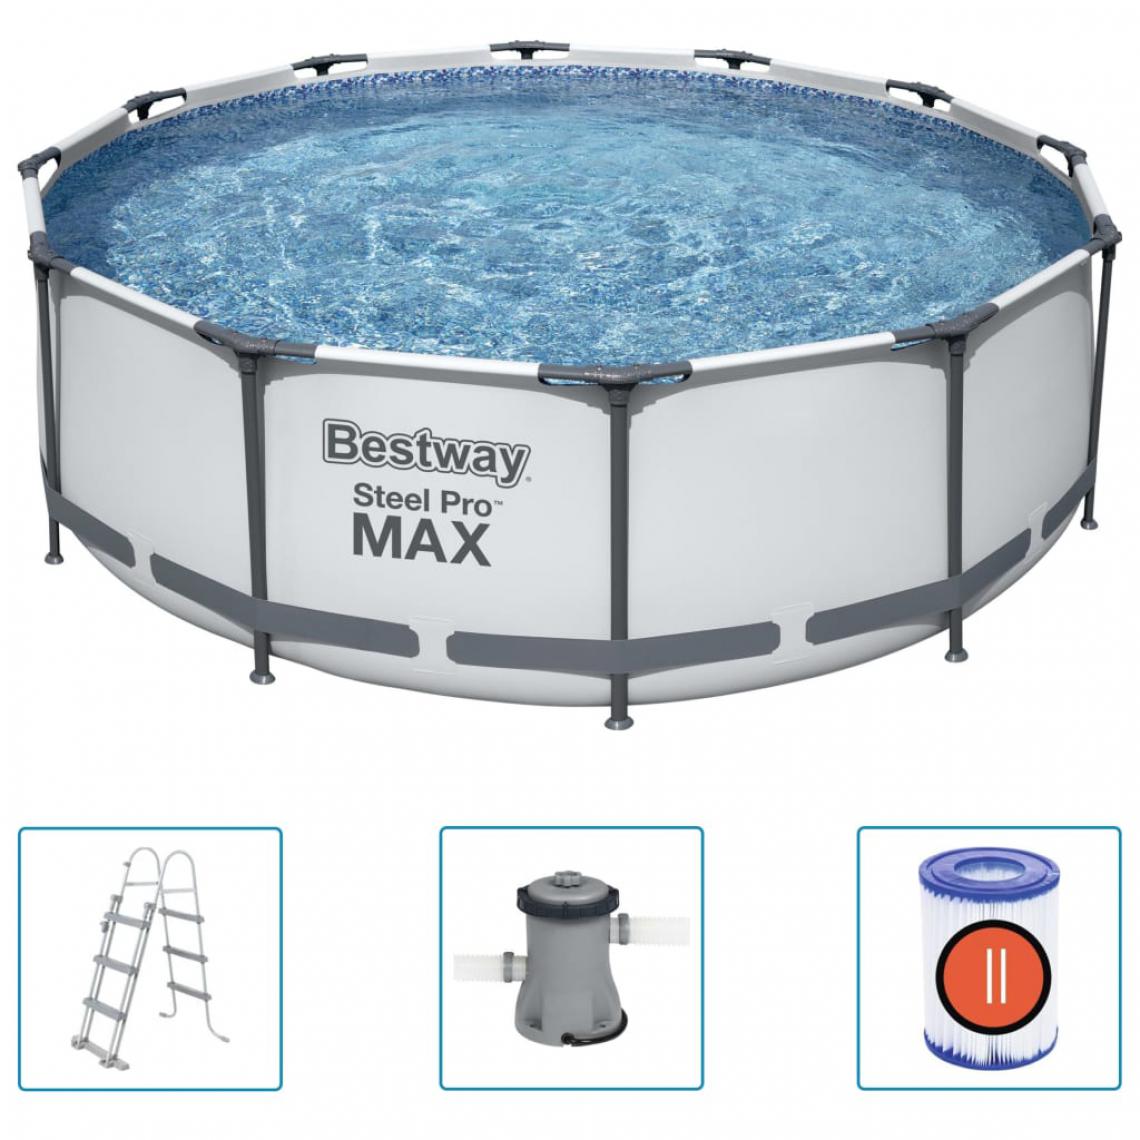 Bestway - Bestway Ensemble de piscine Steel Pro MAX 366x100 cm - Piscines autoportantes